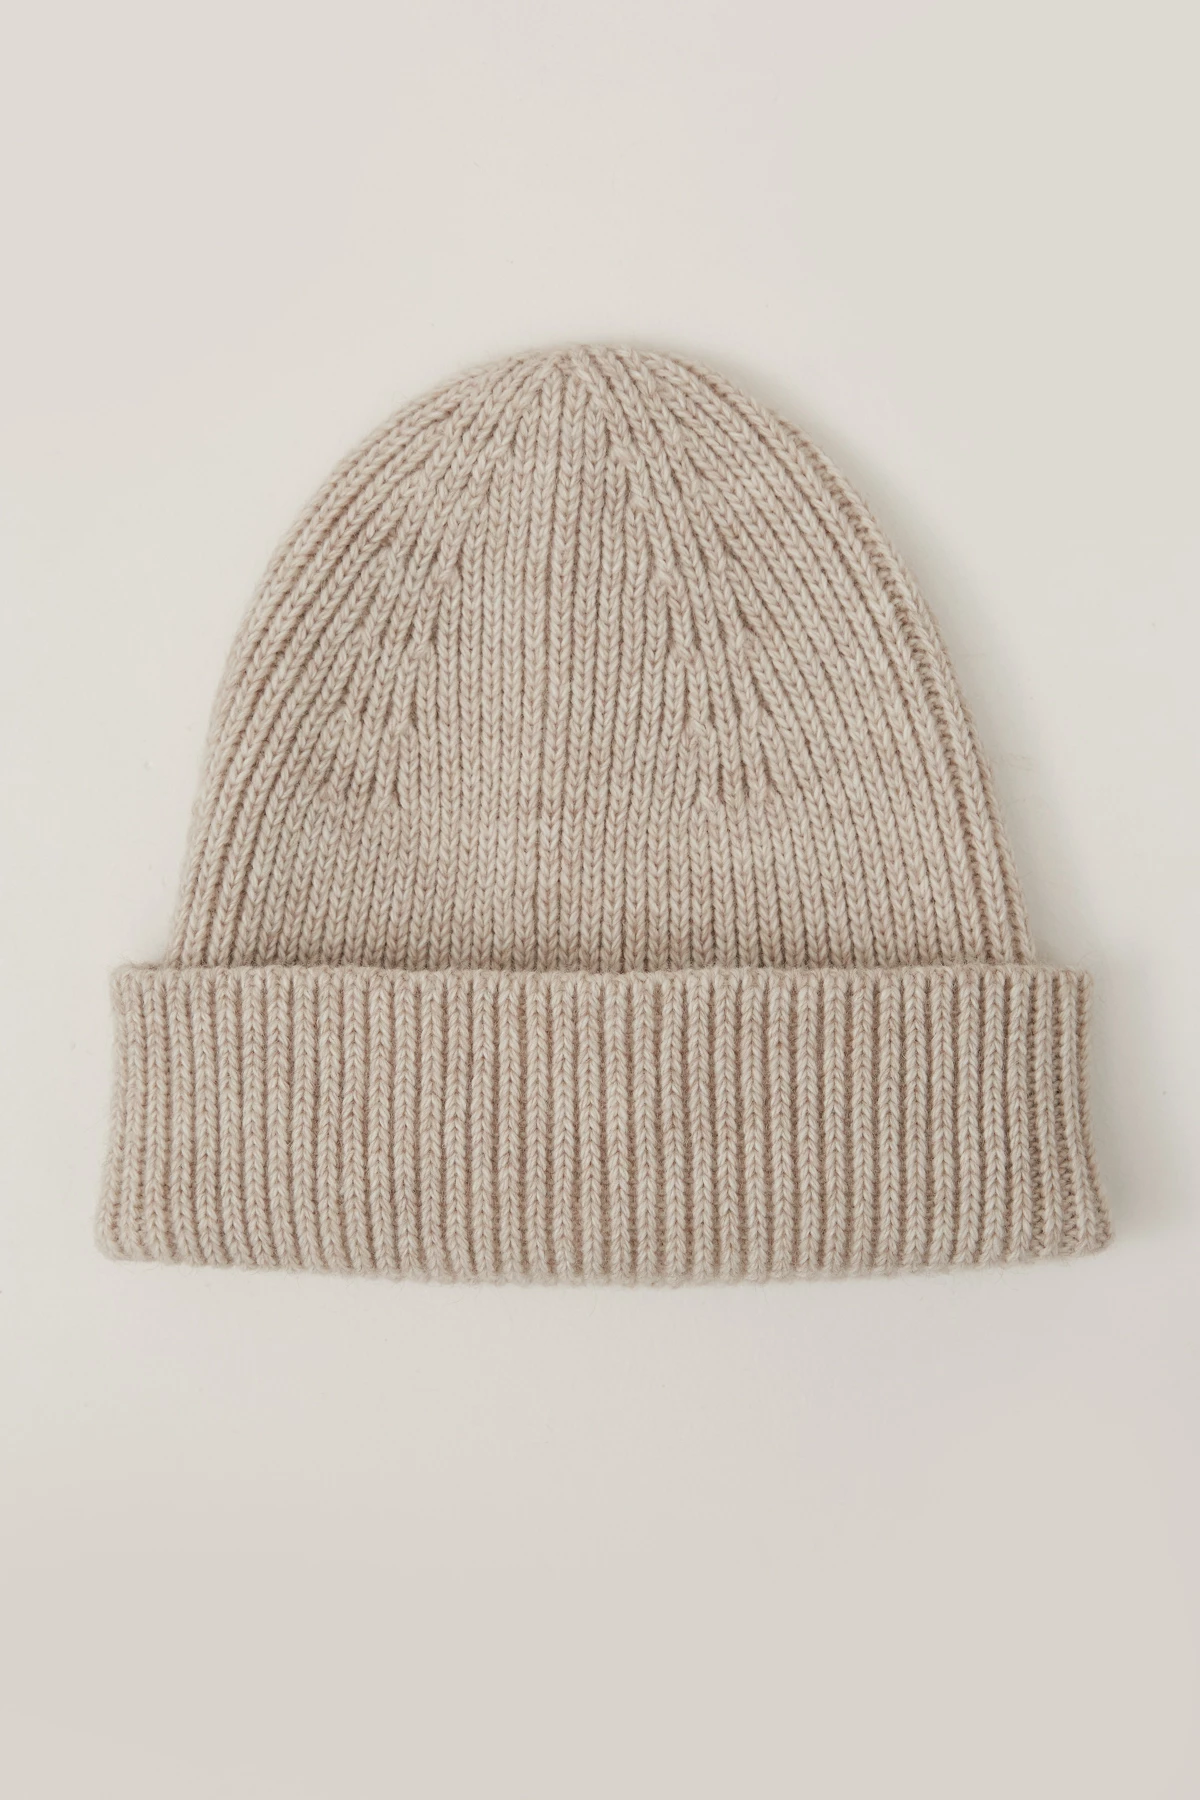 Knitted woolen light beige beanie hat, photo 2